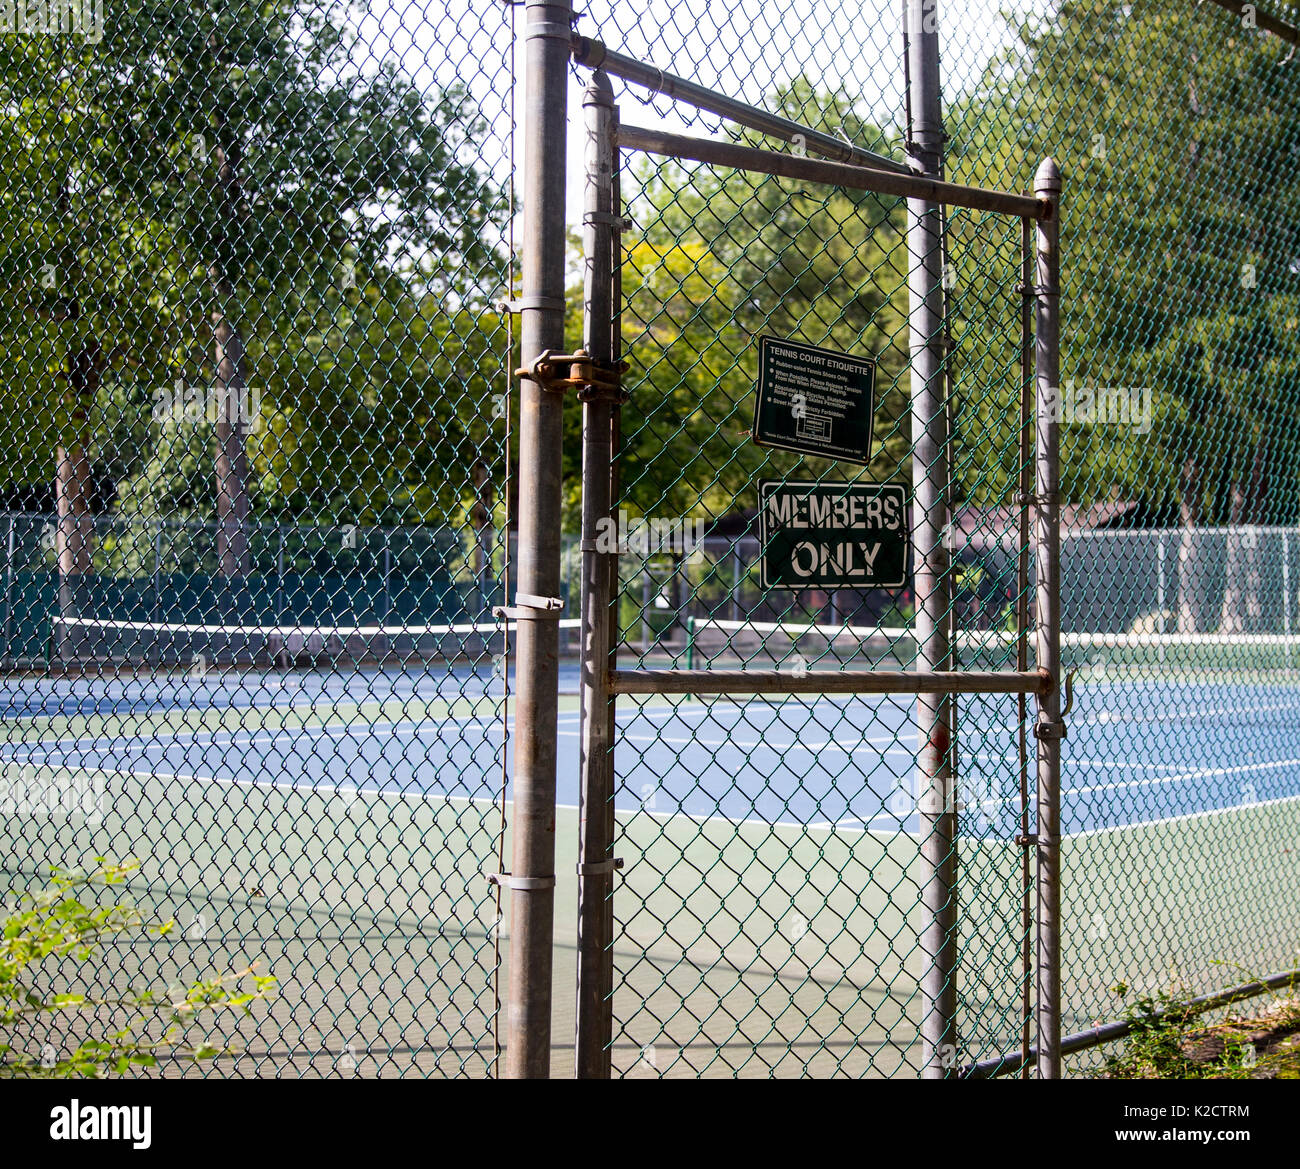 Membri solo cartello d'ingresso ai campi da tennis in Upper Saddle River, New Jersey Foto Stock